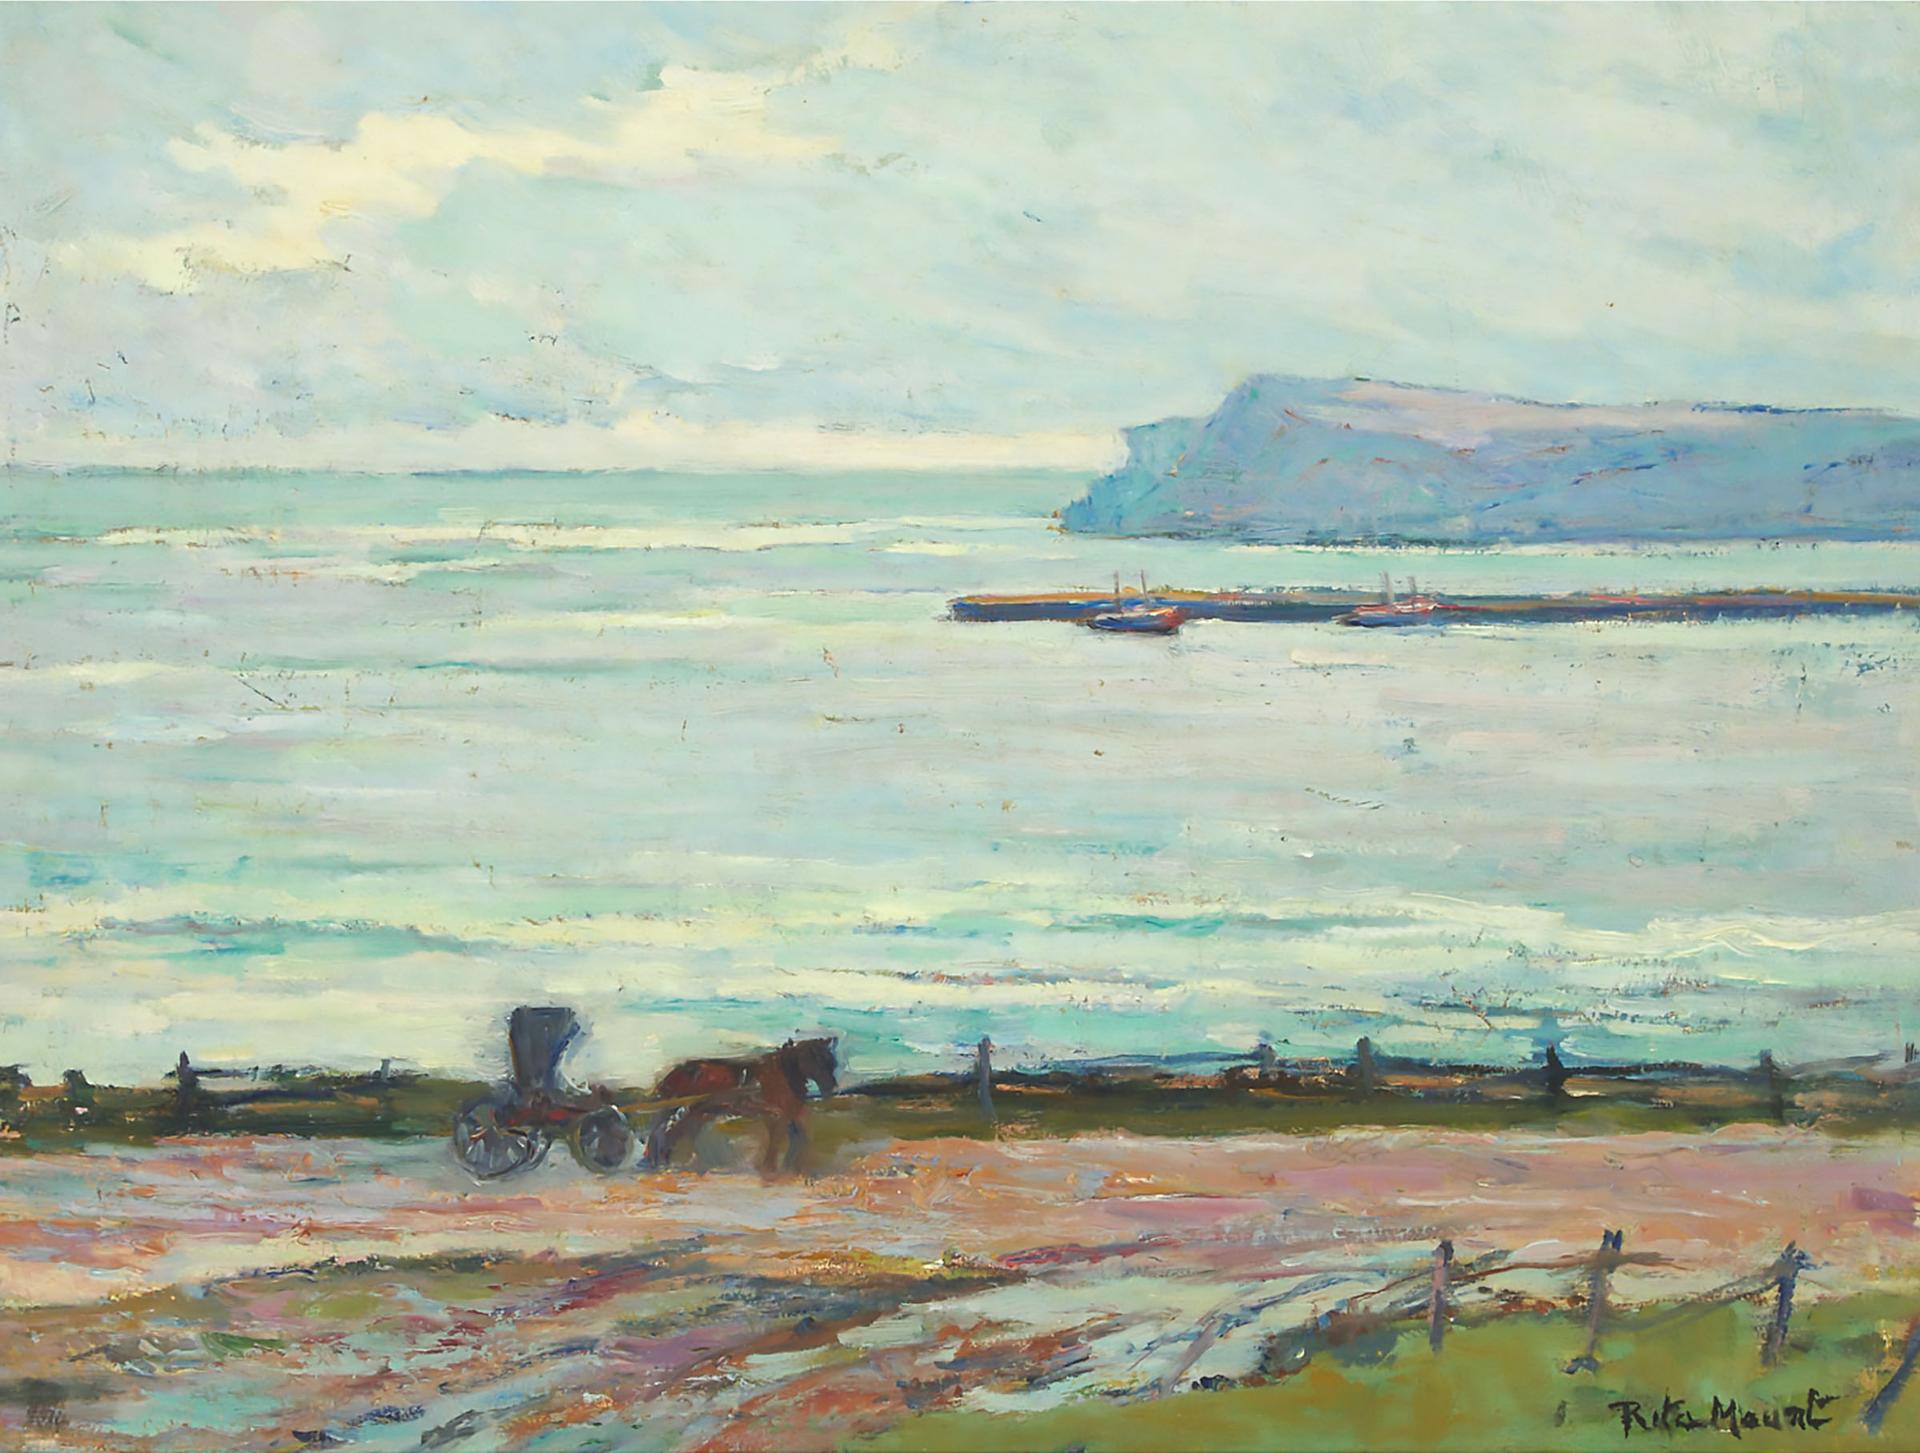 Rita Mount (1888-1967) - Coastal Scene, Gaspé